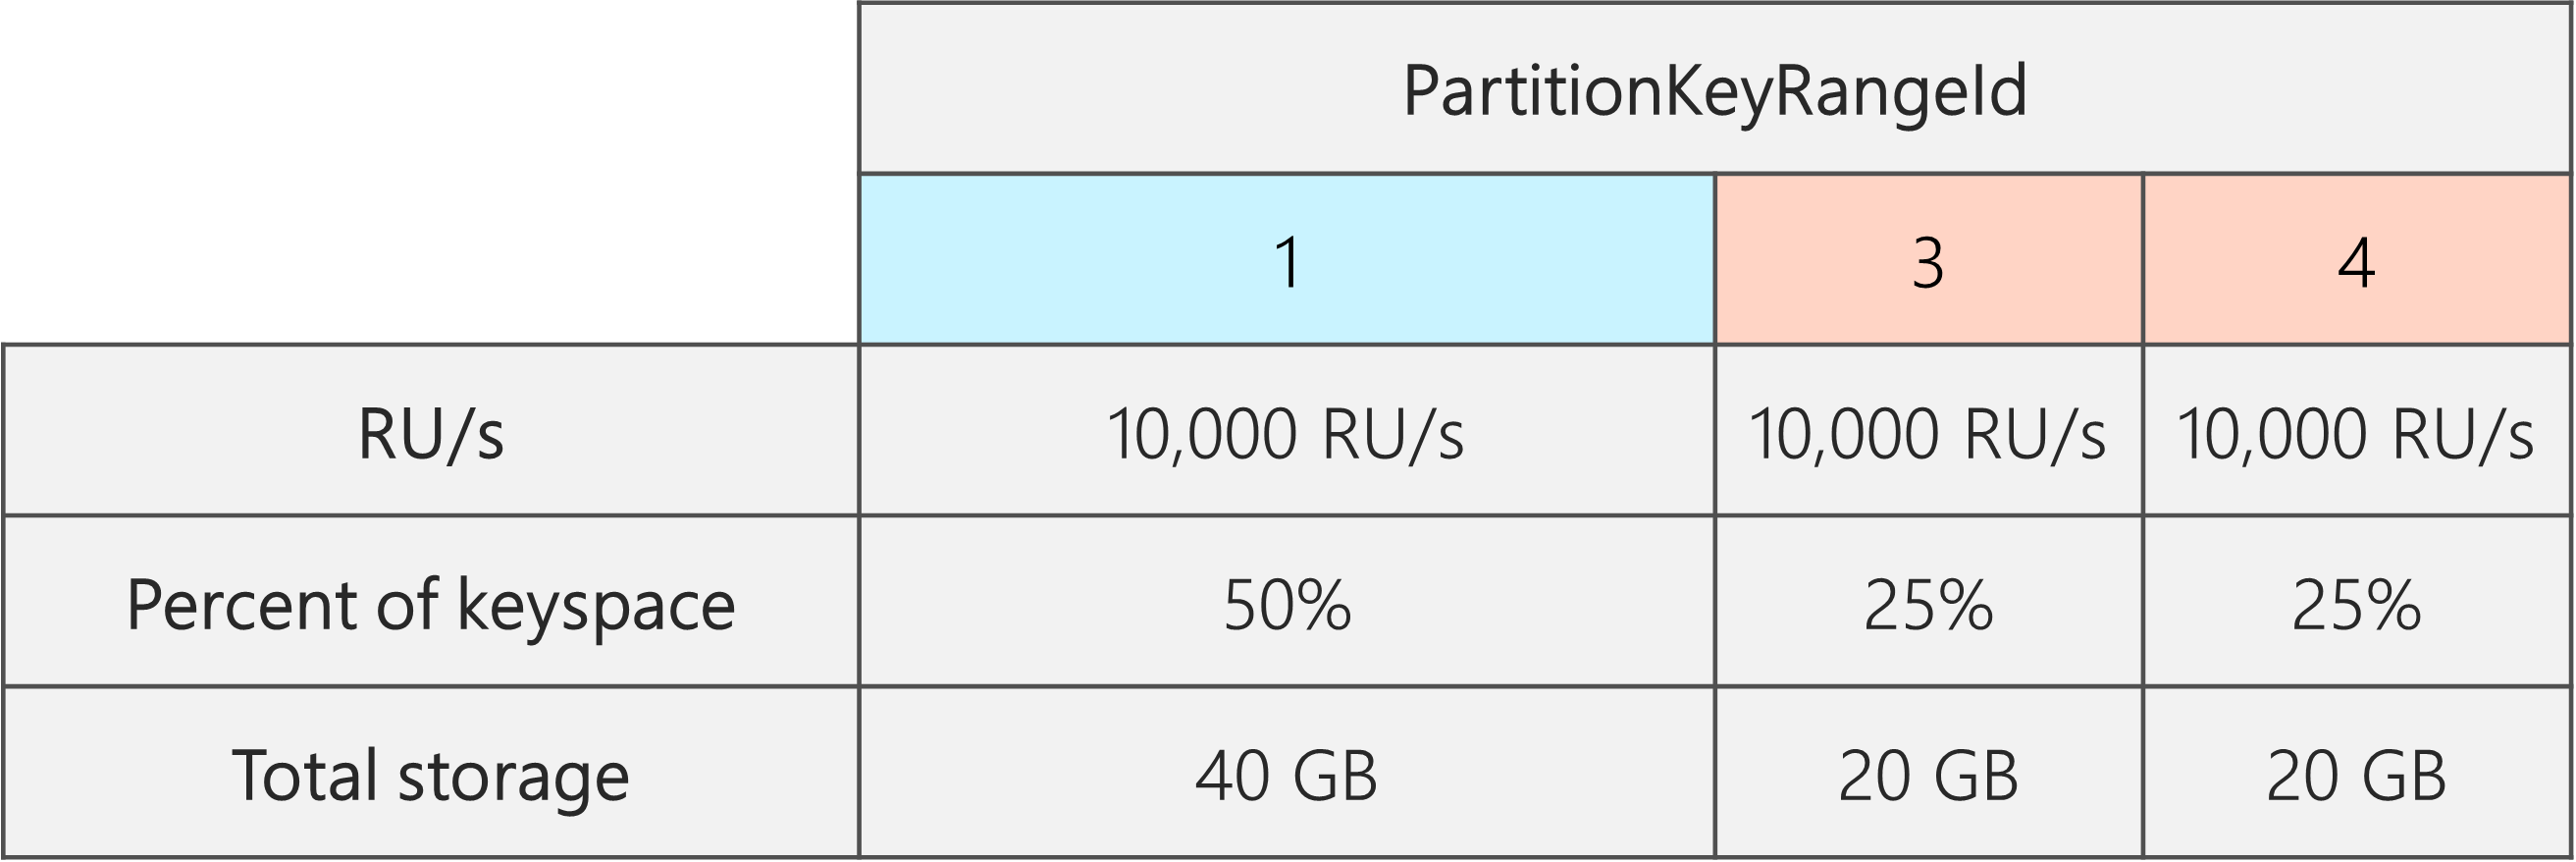 Po podzieleniu istnieje 3 identyfikatory PartitionKeyRangeId, z których każda ma 10 000 RU/s. Jednak jeden z identyfikatorów PartitionKeyRangeId ma 50% całkowitej przestrzeni kluczy (40 GB), podczas gdy dwa identyfikatory PartitionKeyRangeId mają 25% całkowitej przestrzeni kluczy (20 GB)